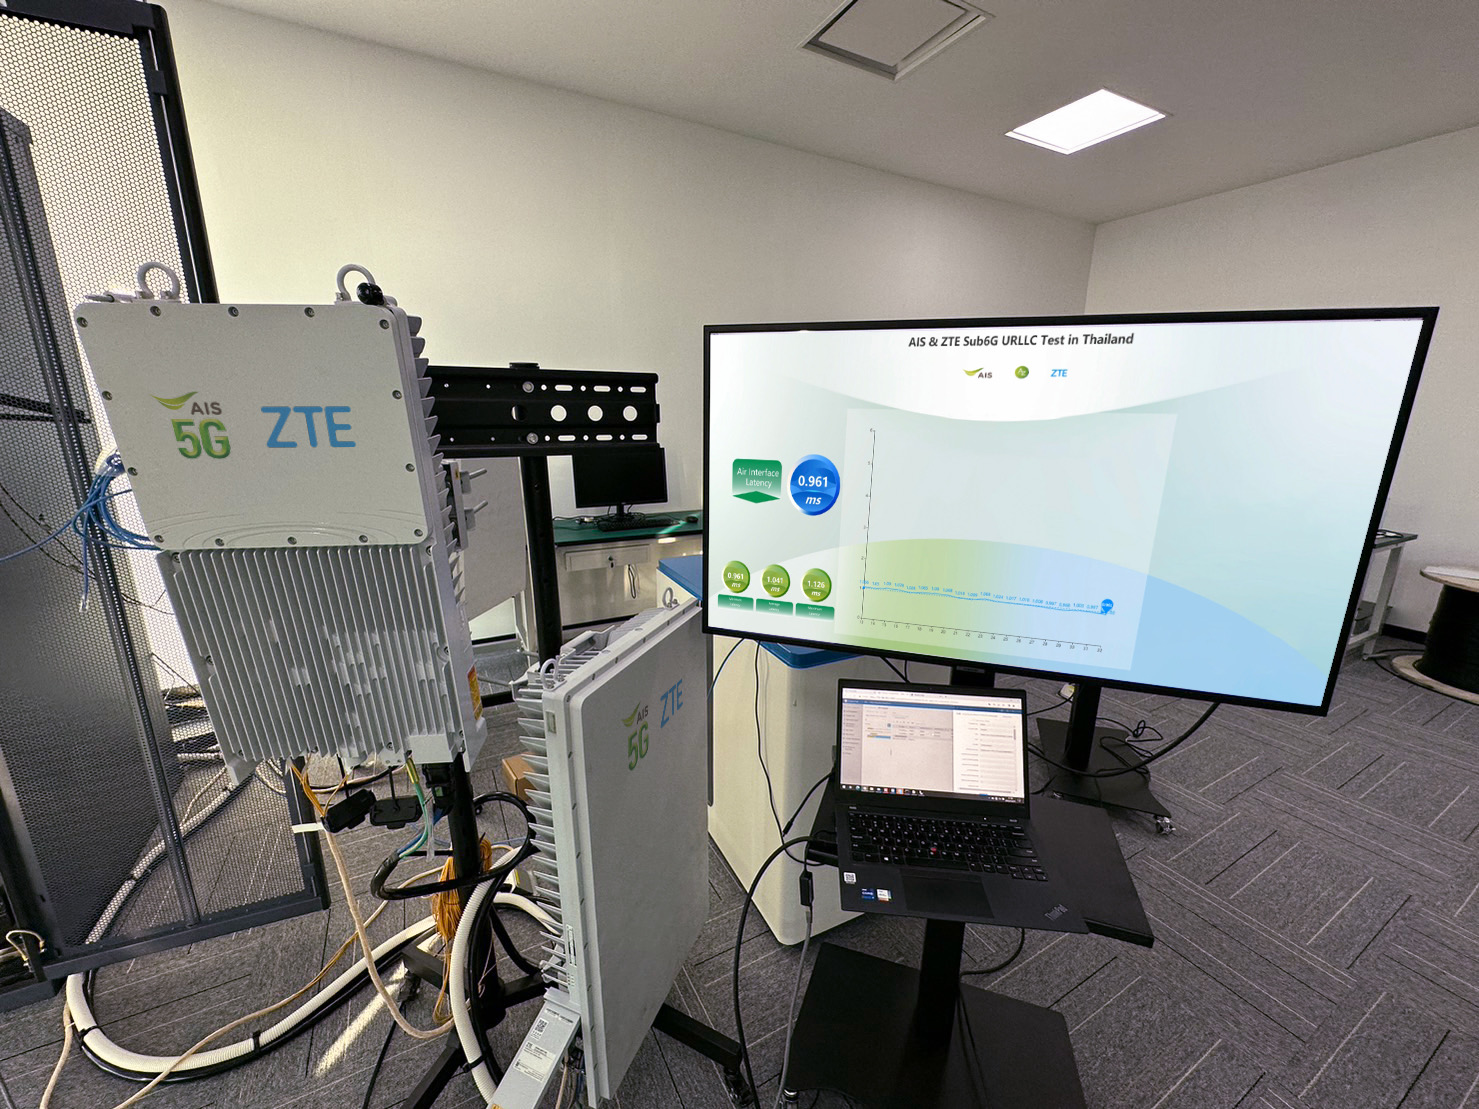 AIS - ZTE ทดสอบ URLLC โชว์ความหน่วงต่ำ 1 มิลลิวินาทีบนเครือข่าย 5G คลื่น 2.6 GHz รายแรกในไทย ตอบโจทย์คลาวด์เกมมิ่ง และ Smart Industry